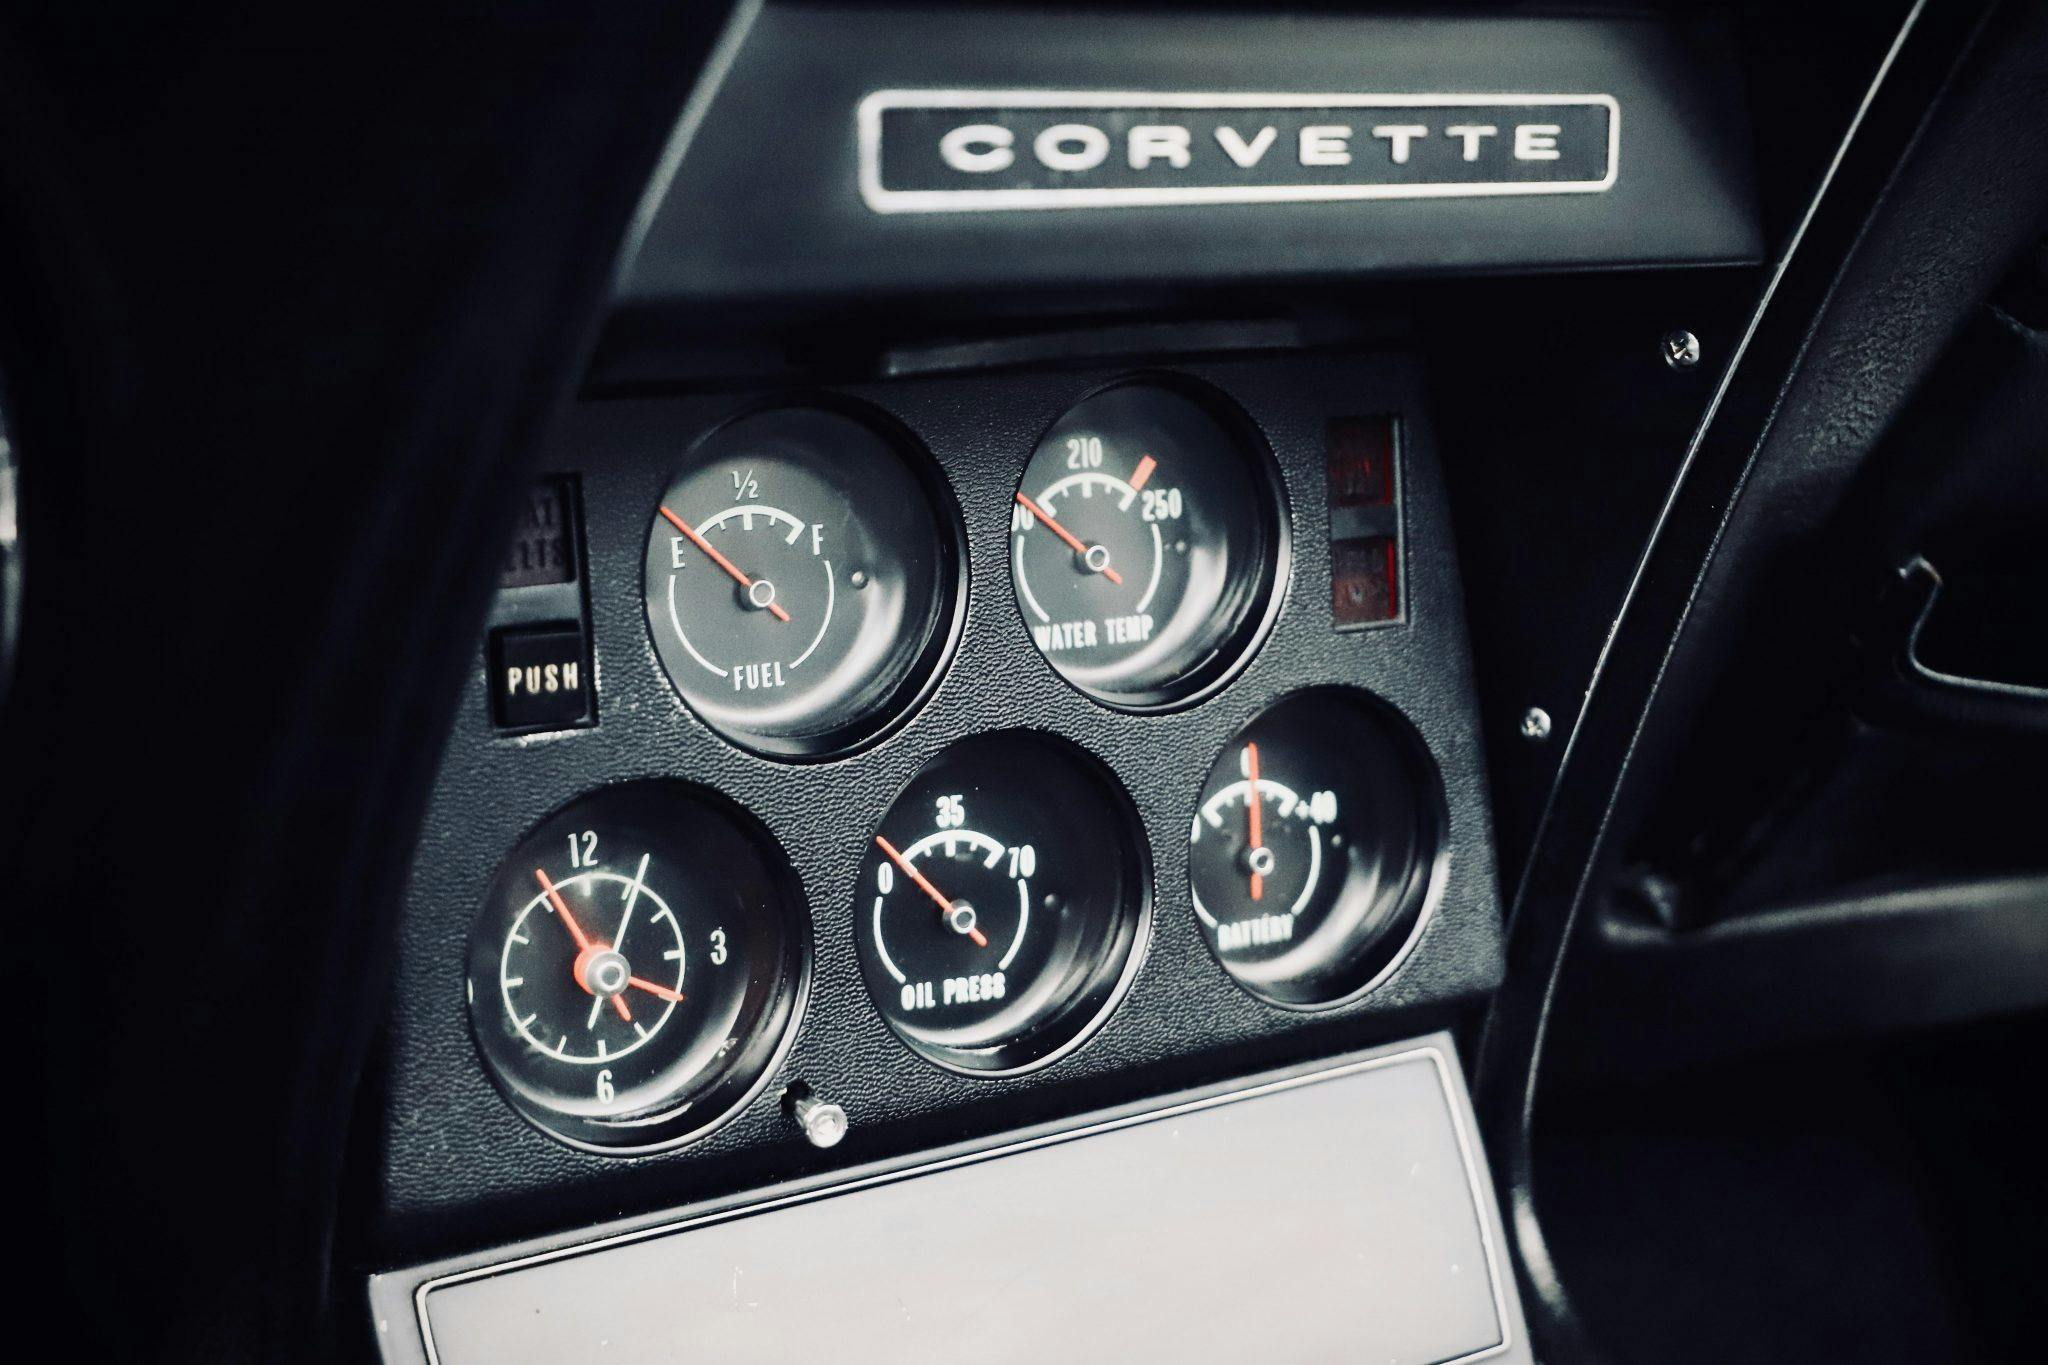 1969 Chevrolet Corvette L88 coupe Tuxedo Black gauges